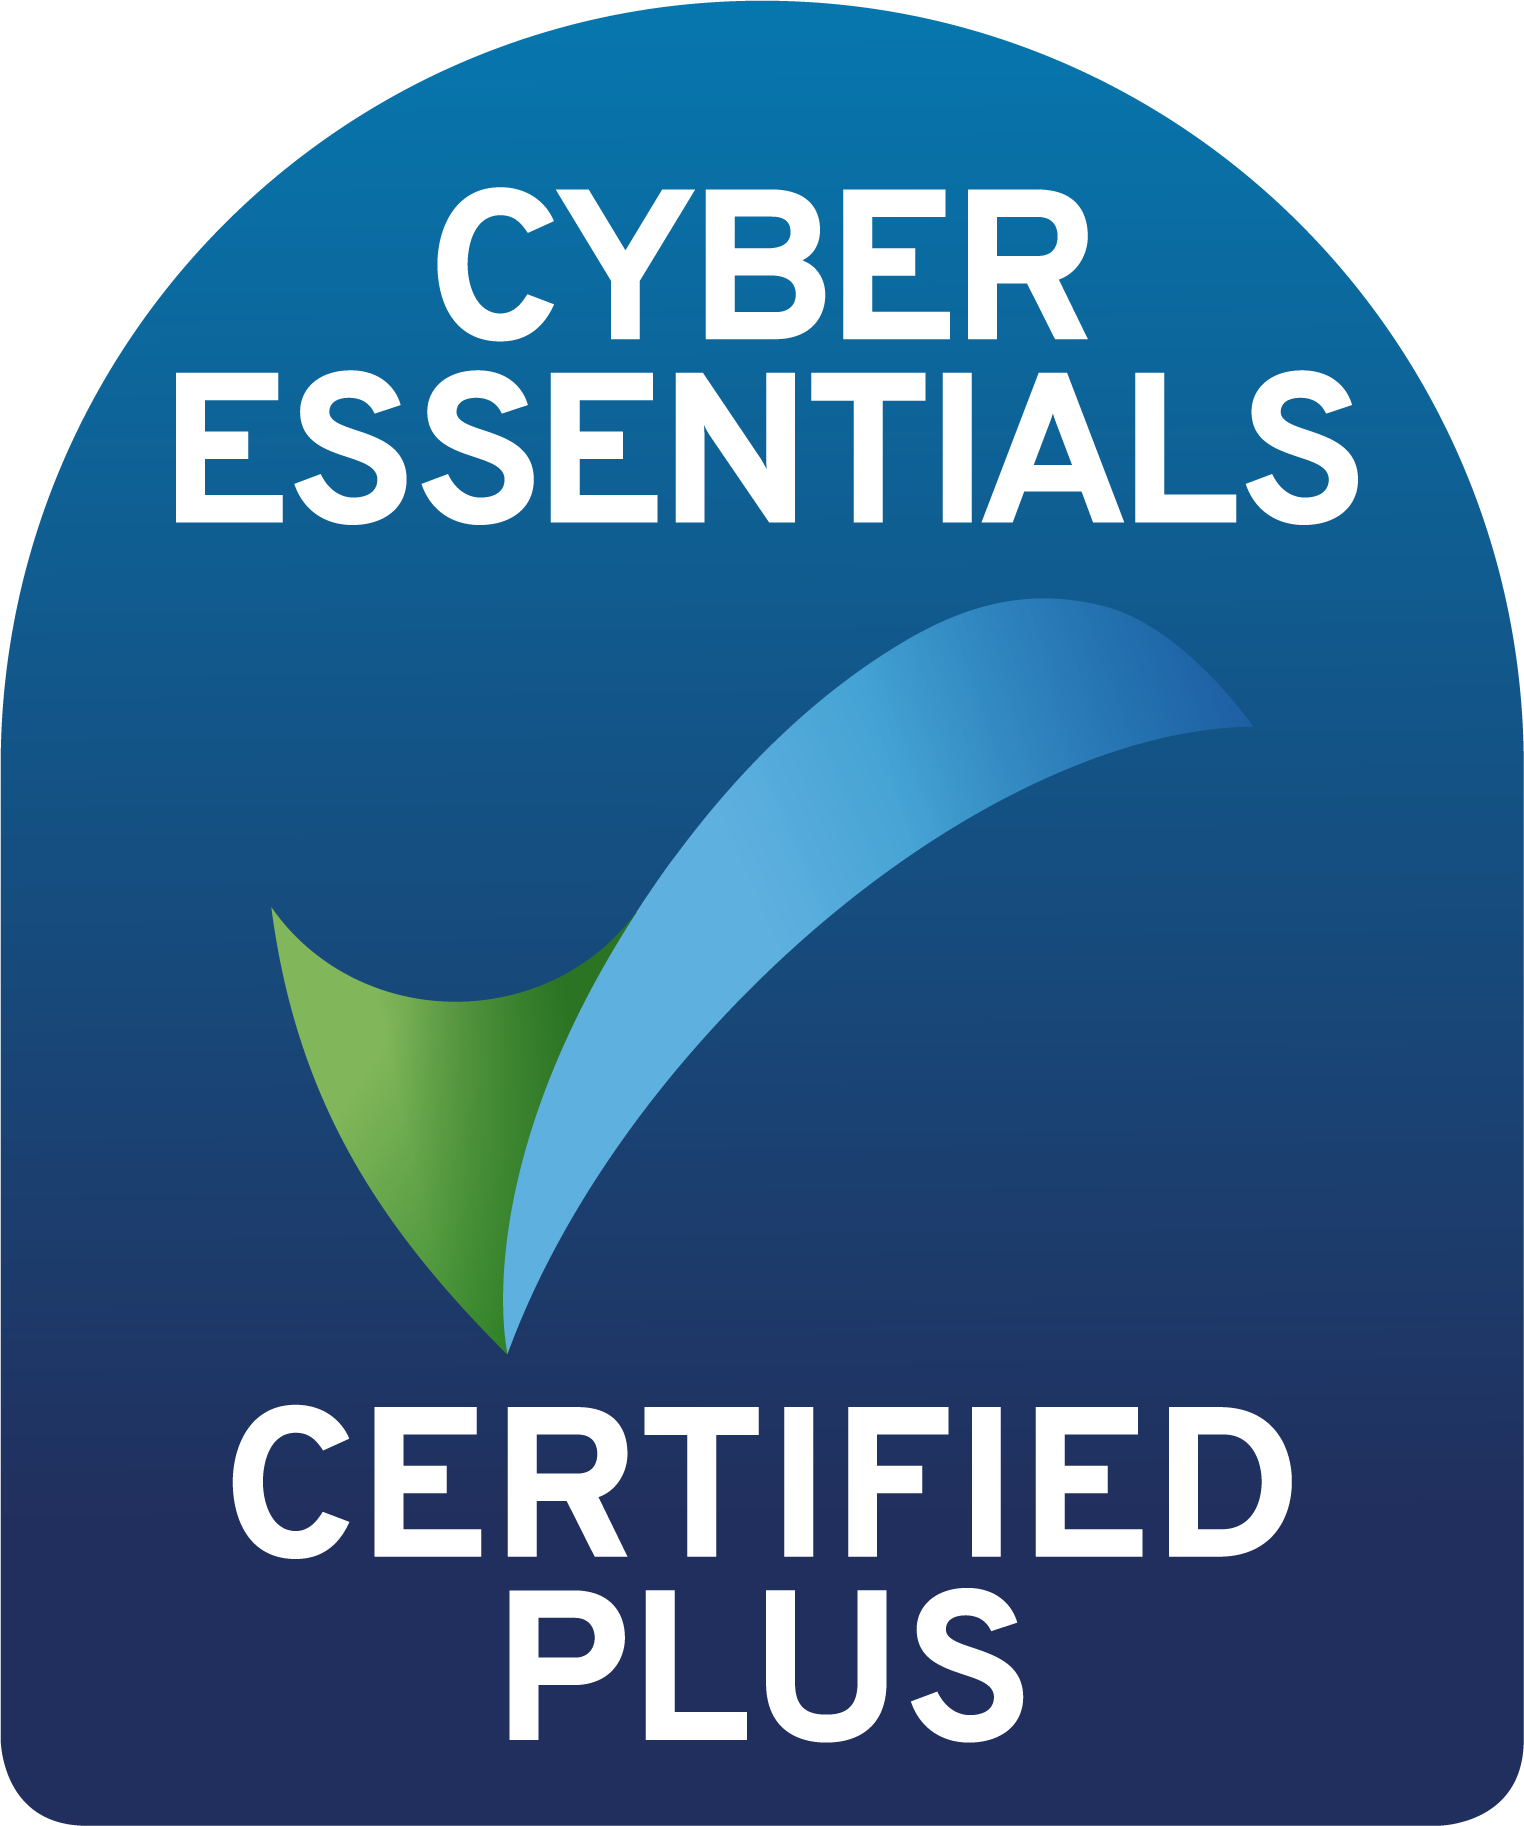 Cyber Essential Plus accreditation logo